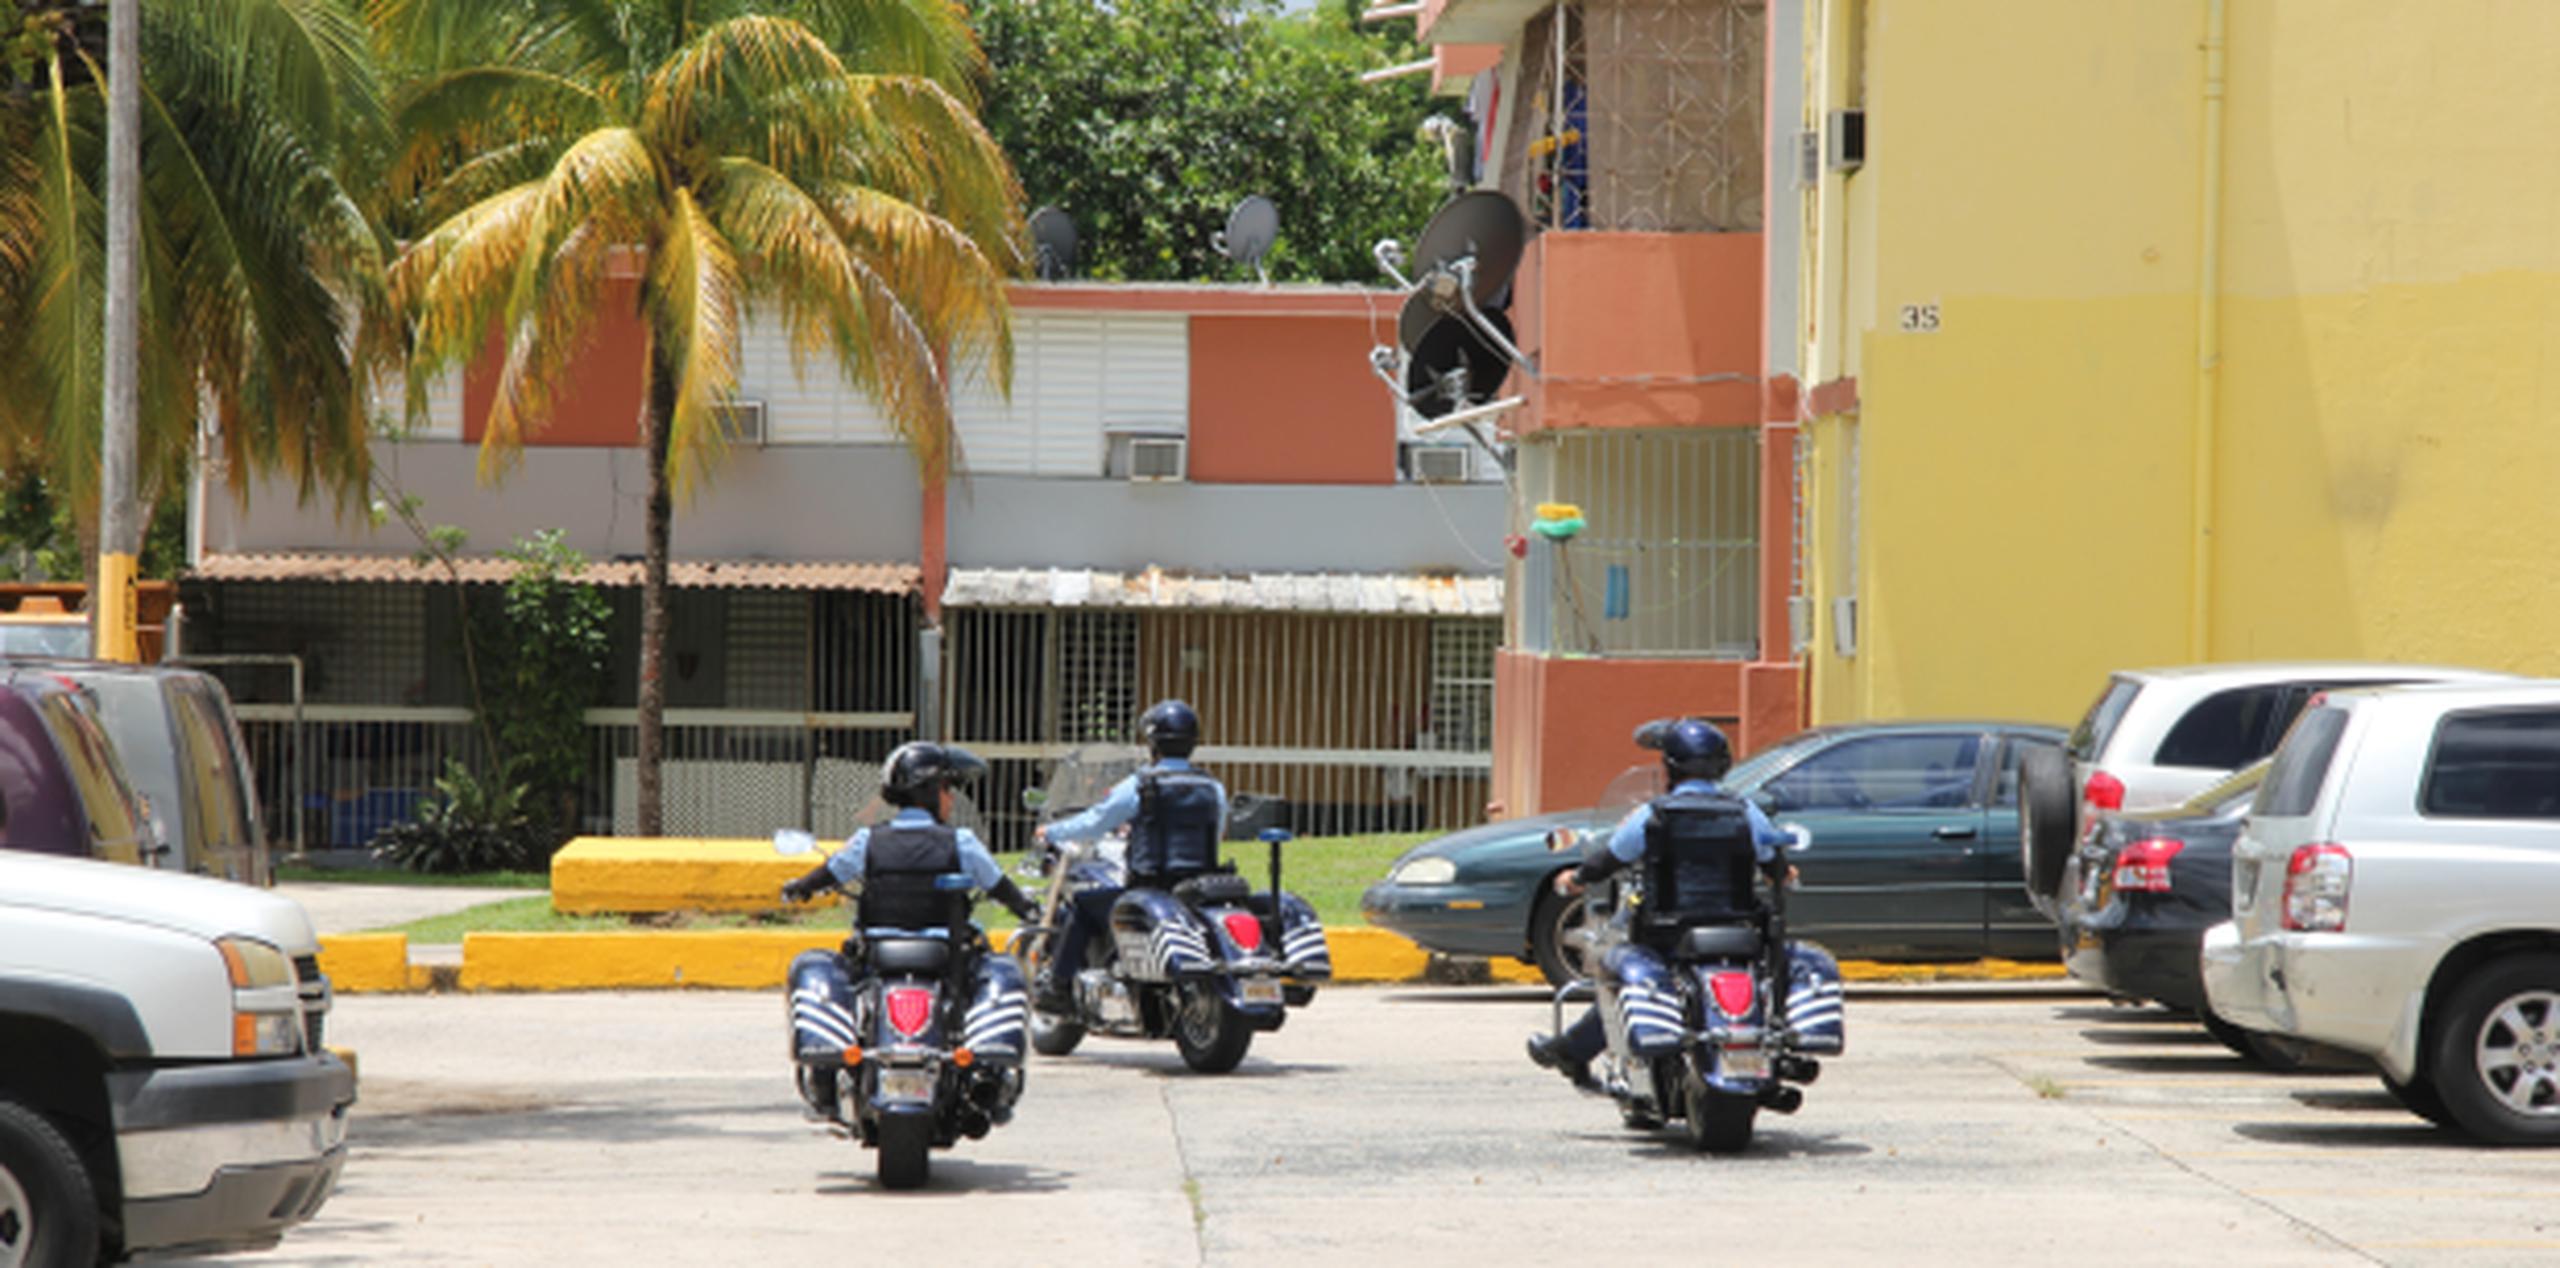 Este viernes comenzó con la presencia de varias patrullas y motoras de la Policía en los alrededores. (alex.figueroa@gfrmedia.com)